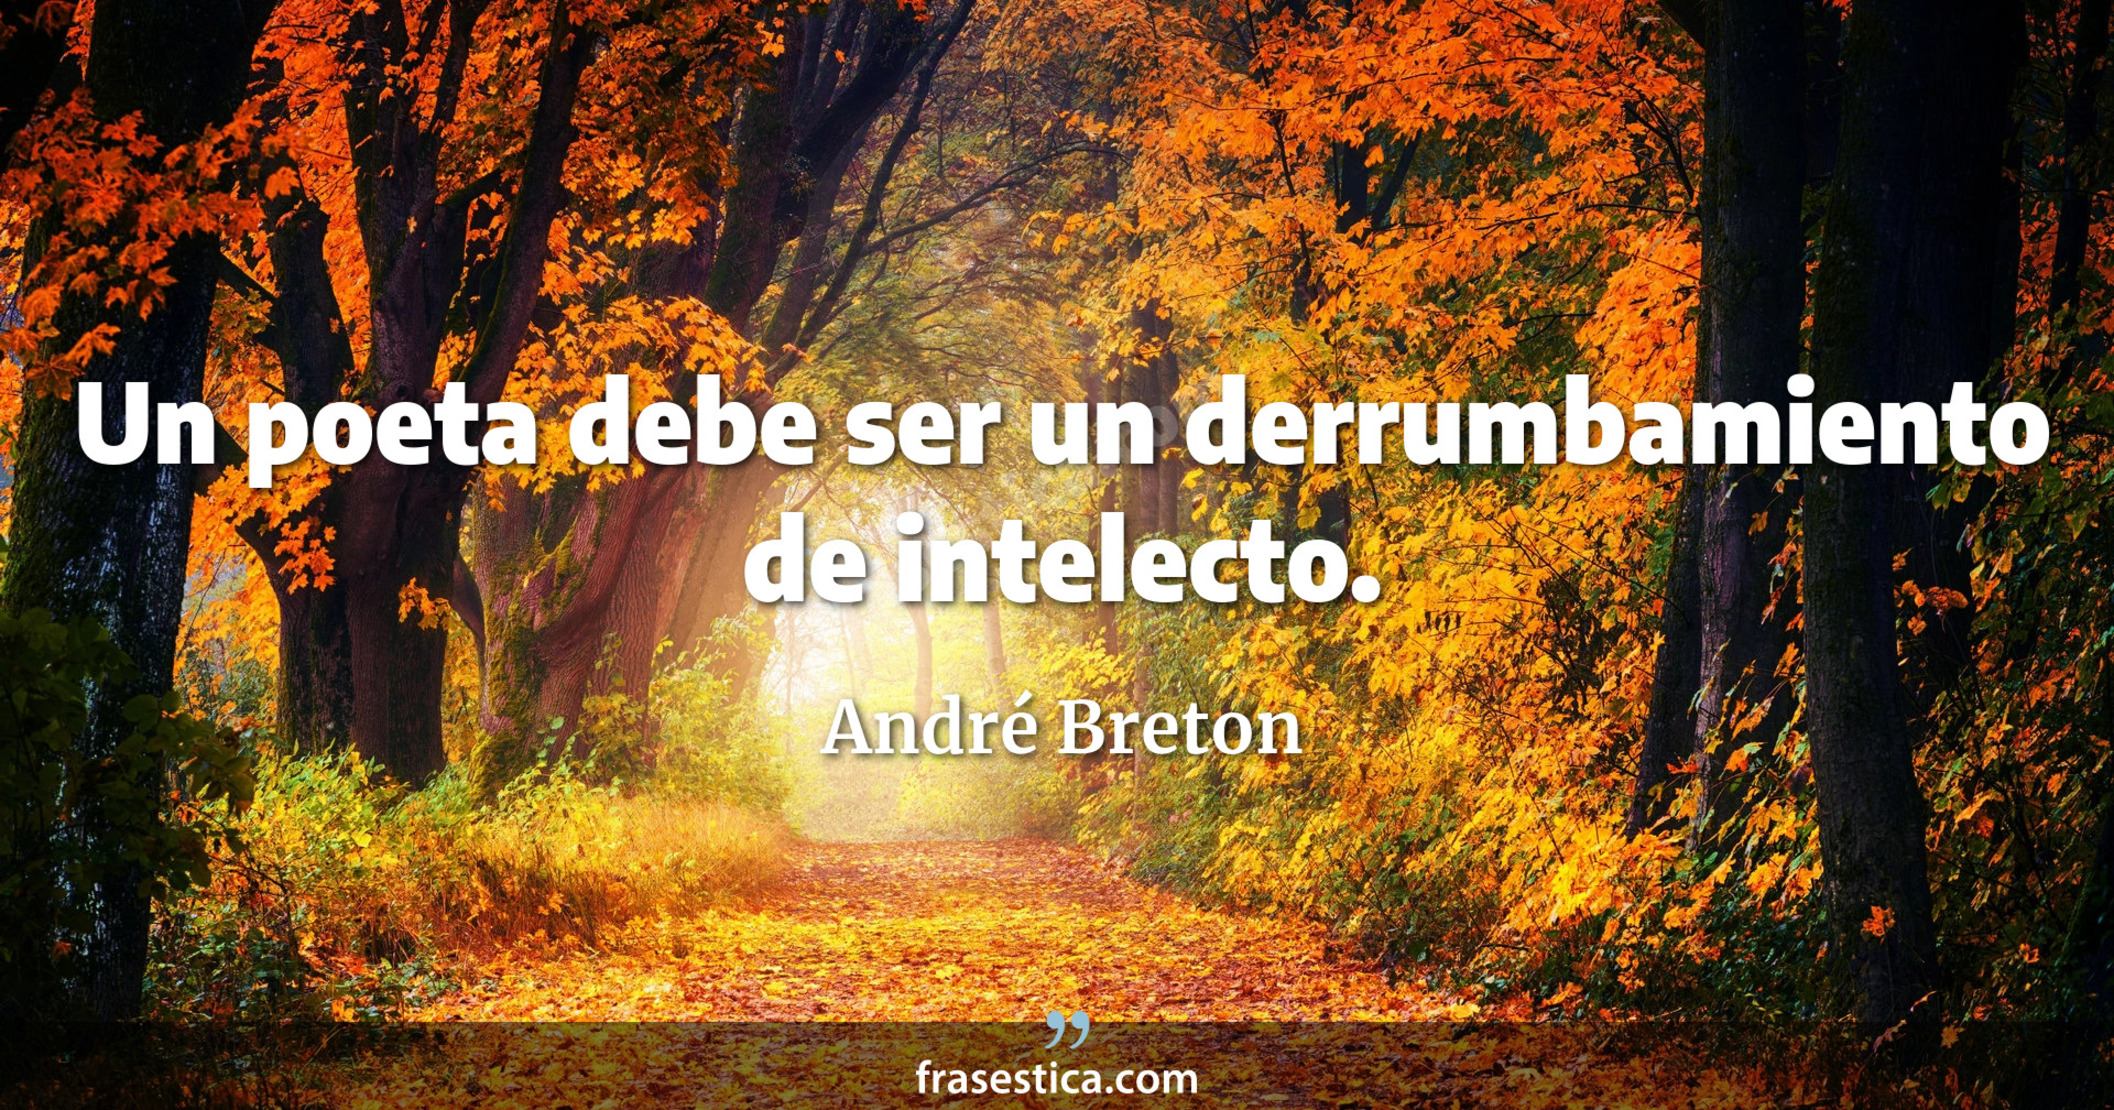 Un poeta debe ser un derrumbamiento de intelecto. - André Breton